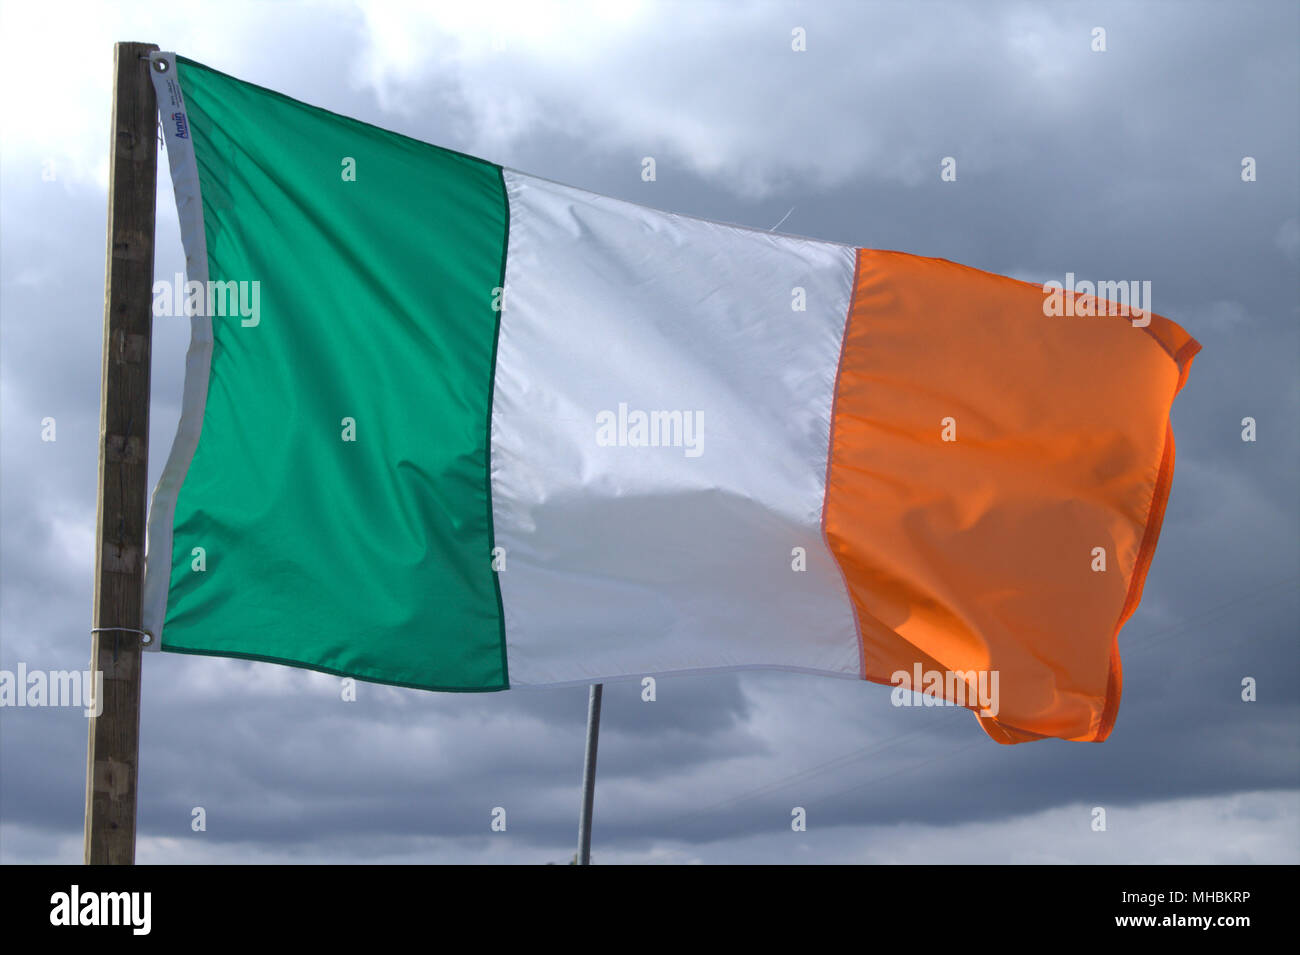 Irlanda bandiera nazionale tricolore e alfiere della Repubblica di Irlanda volare in un vento rigido contro un cielo tempestoso. Foto Stock